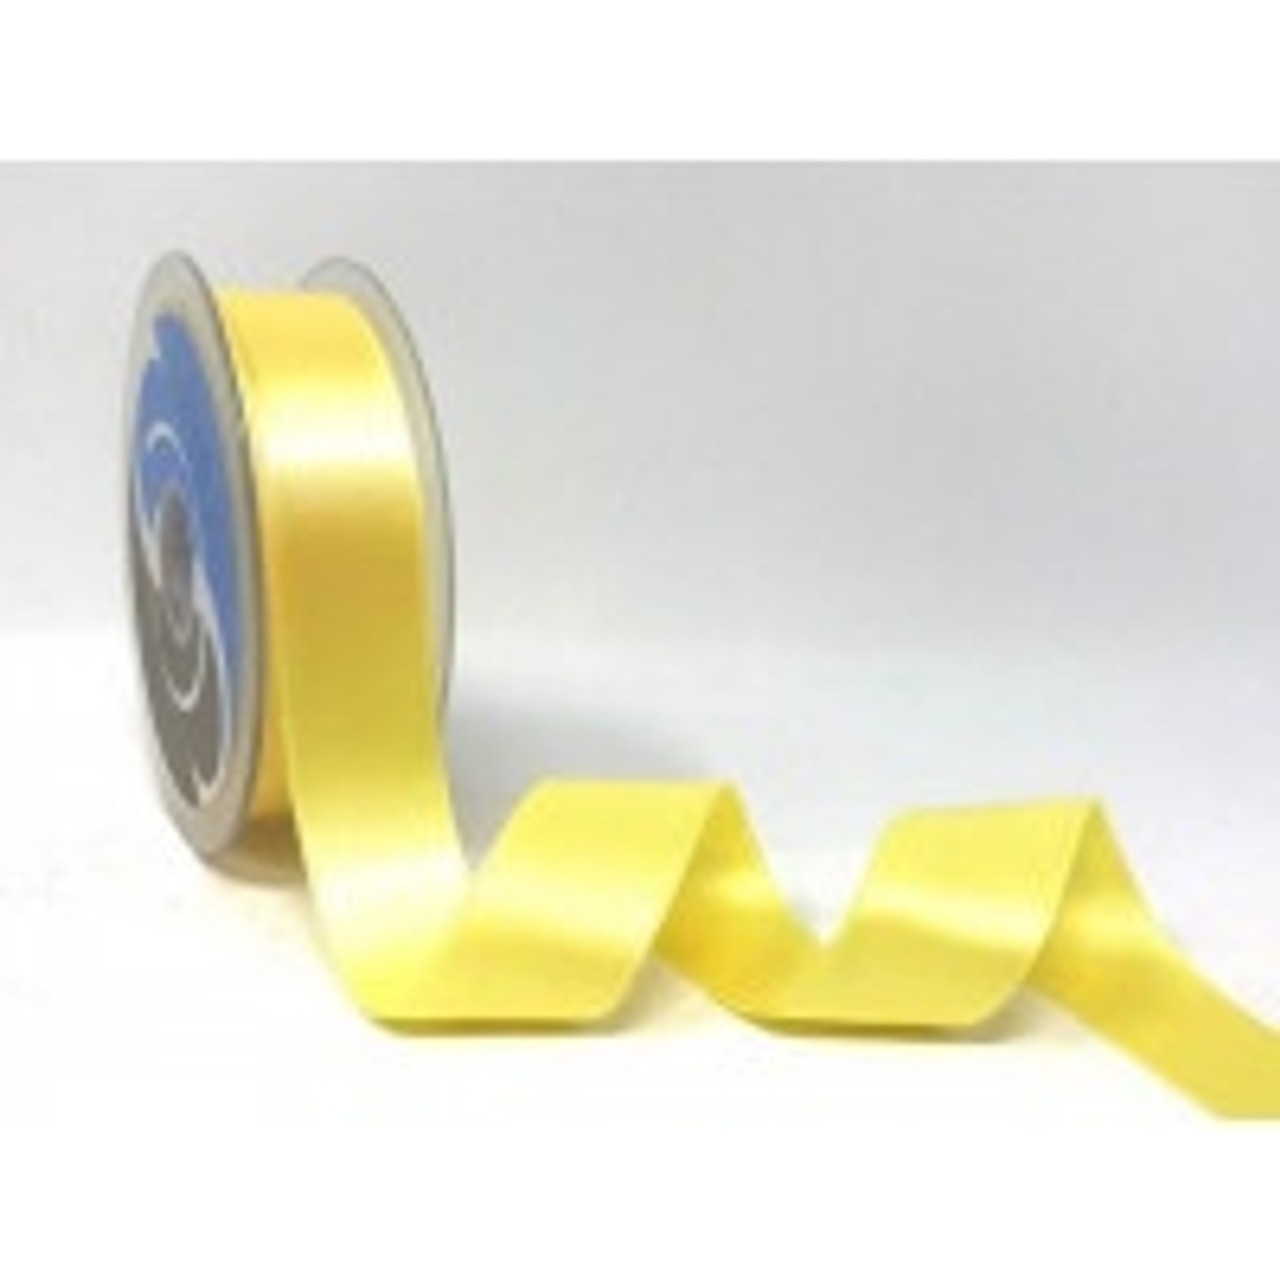 Pale Yellow Satin Ribbon, 25mm wide, Sold Per Metre